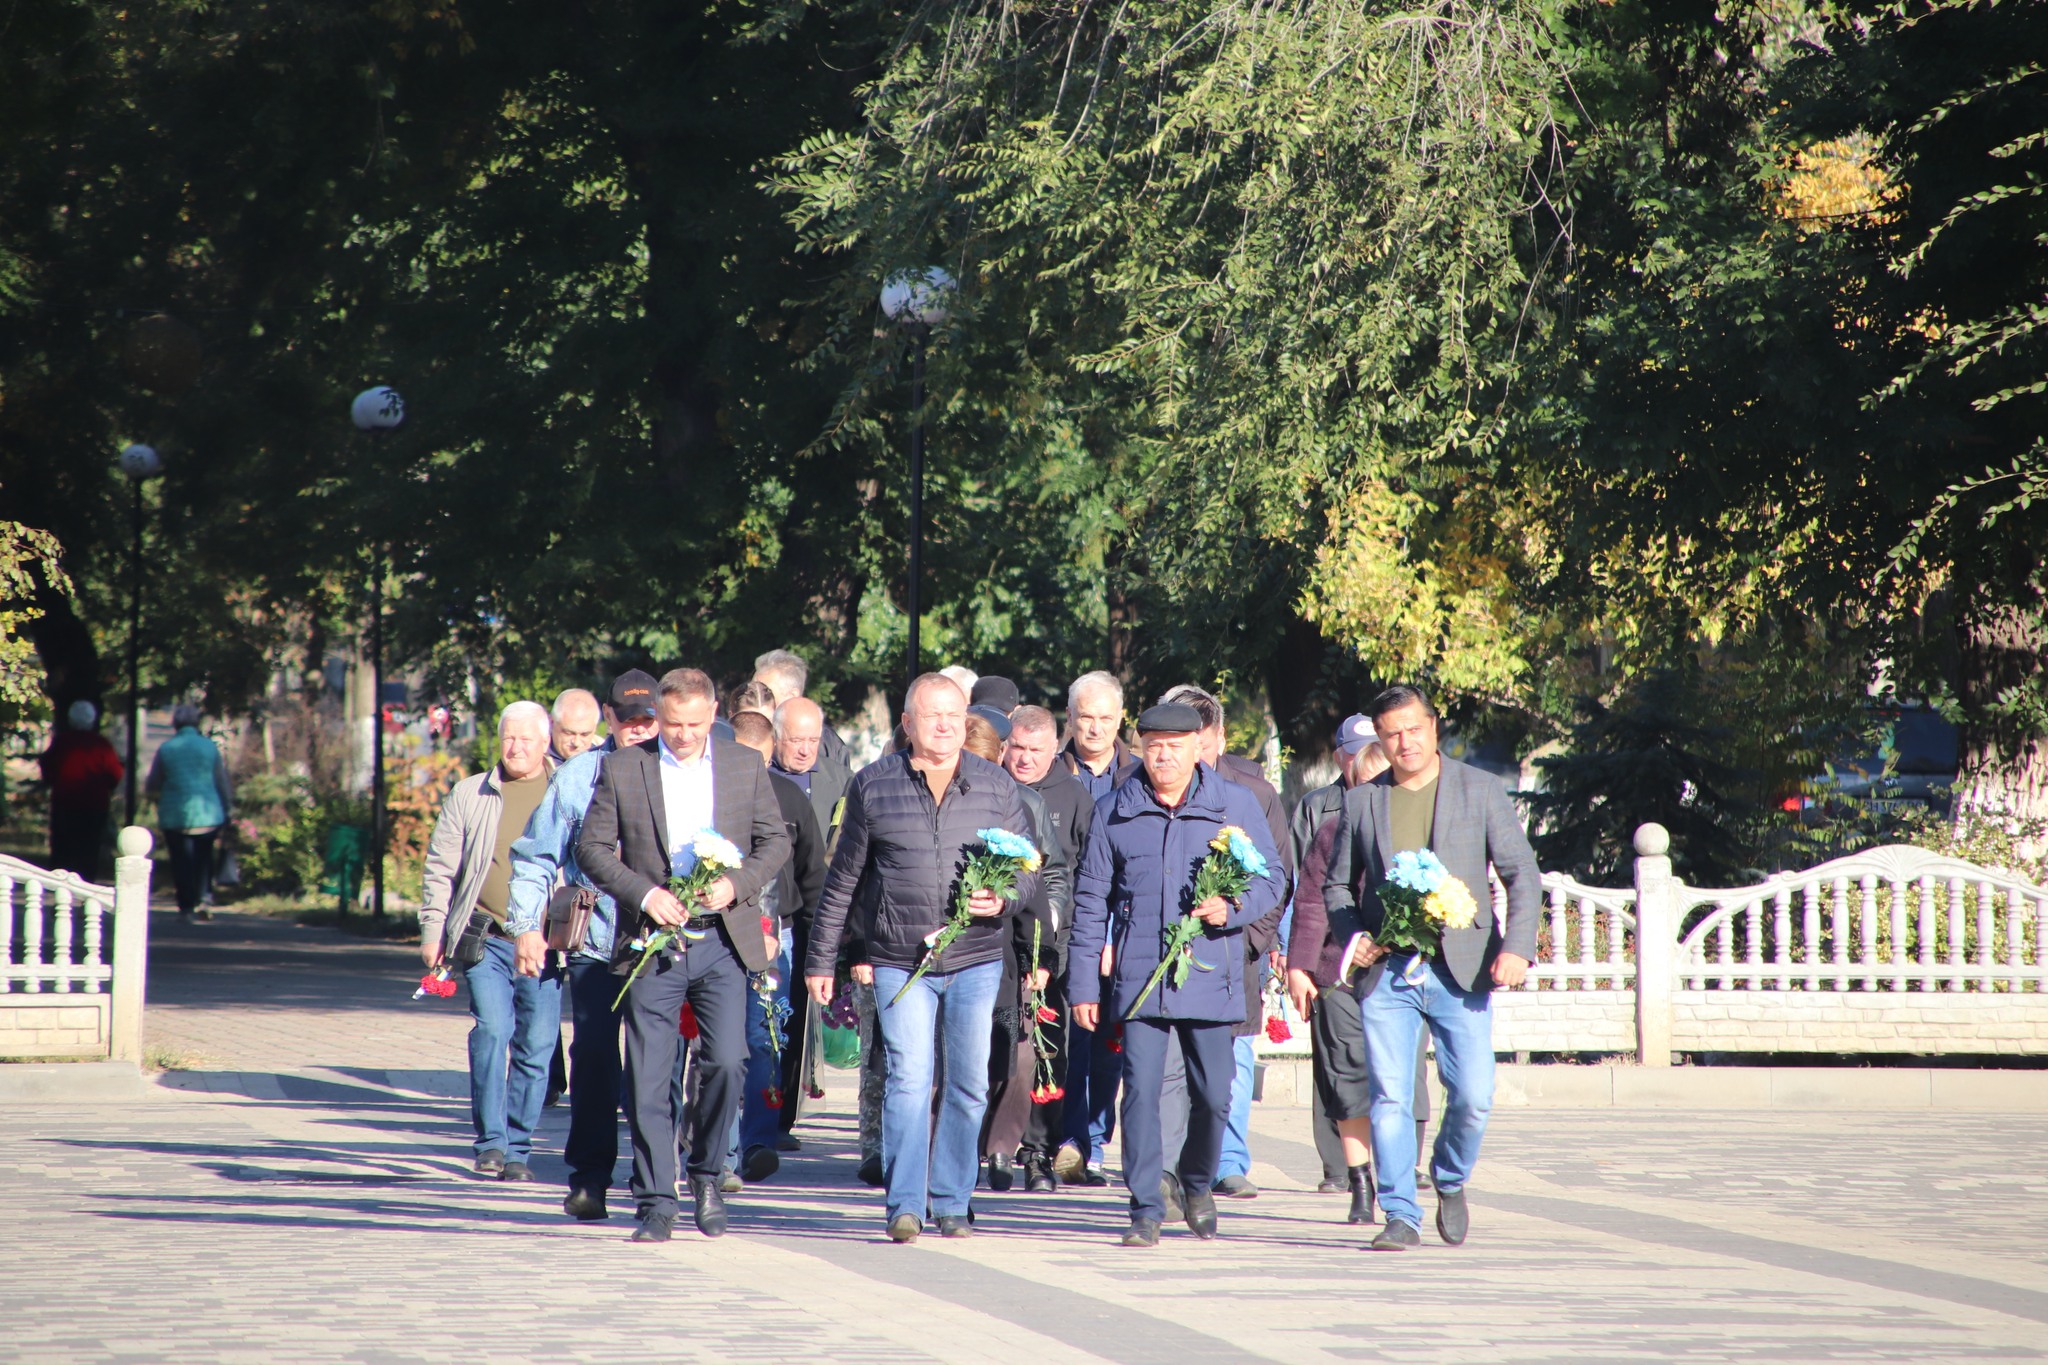 33 роки пам'яті - у Болграді вшанували пам'ять загиблих воїнів Восьмої парашутно-десантної роти, яка розбилась над Каспійським морем